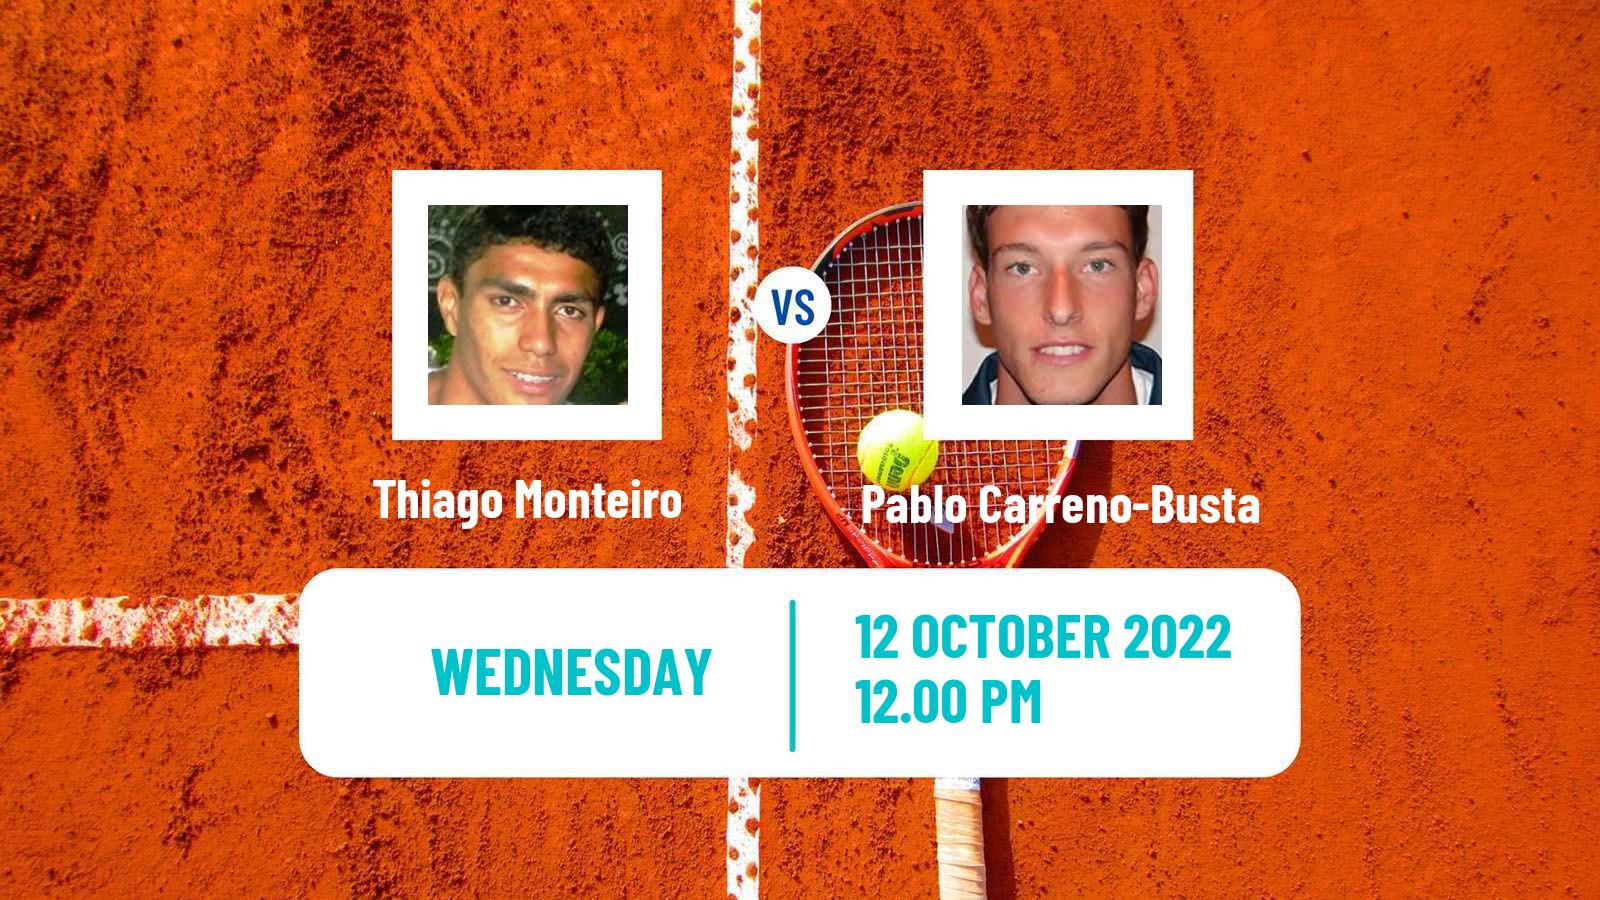 Tennis ATP Gijon Thiago Monteiro - Pablo Carreno-Busta